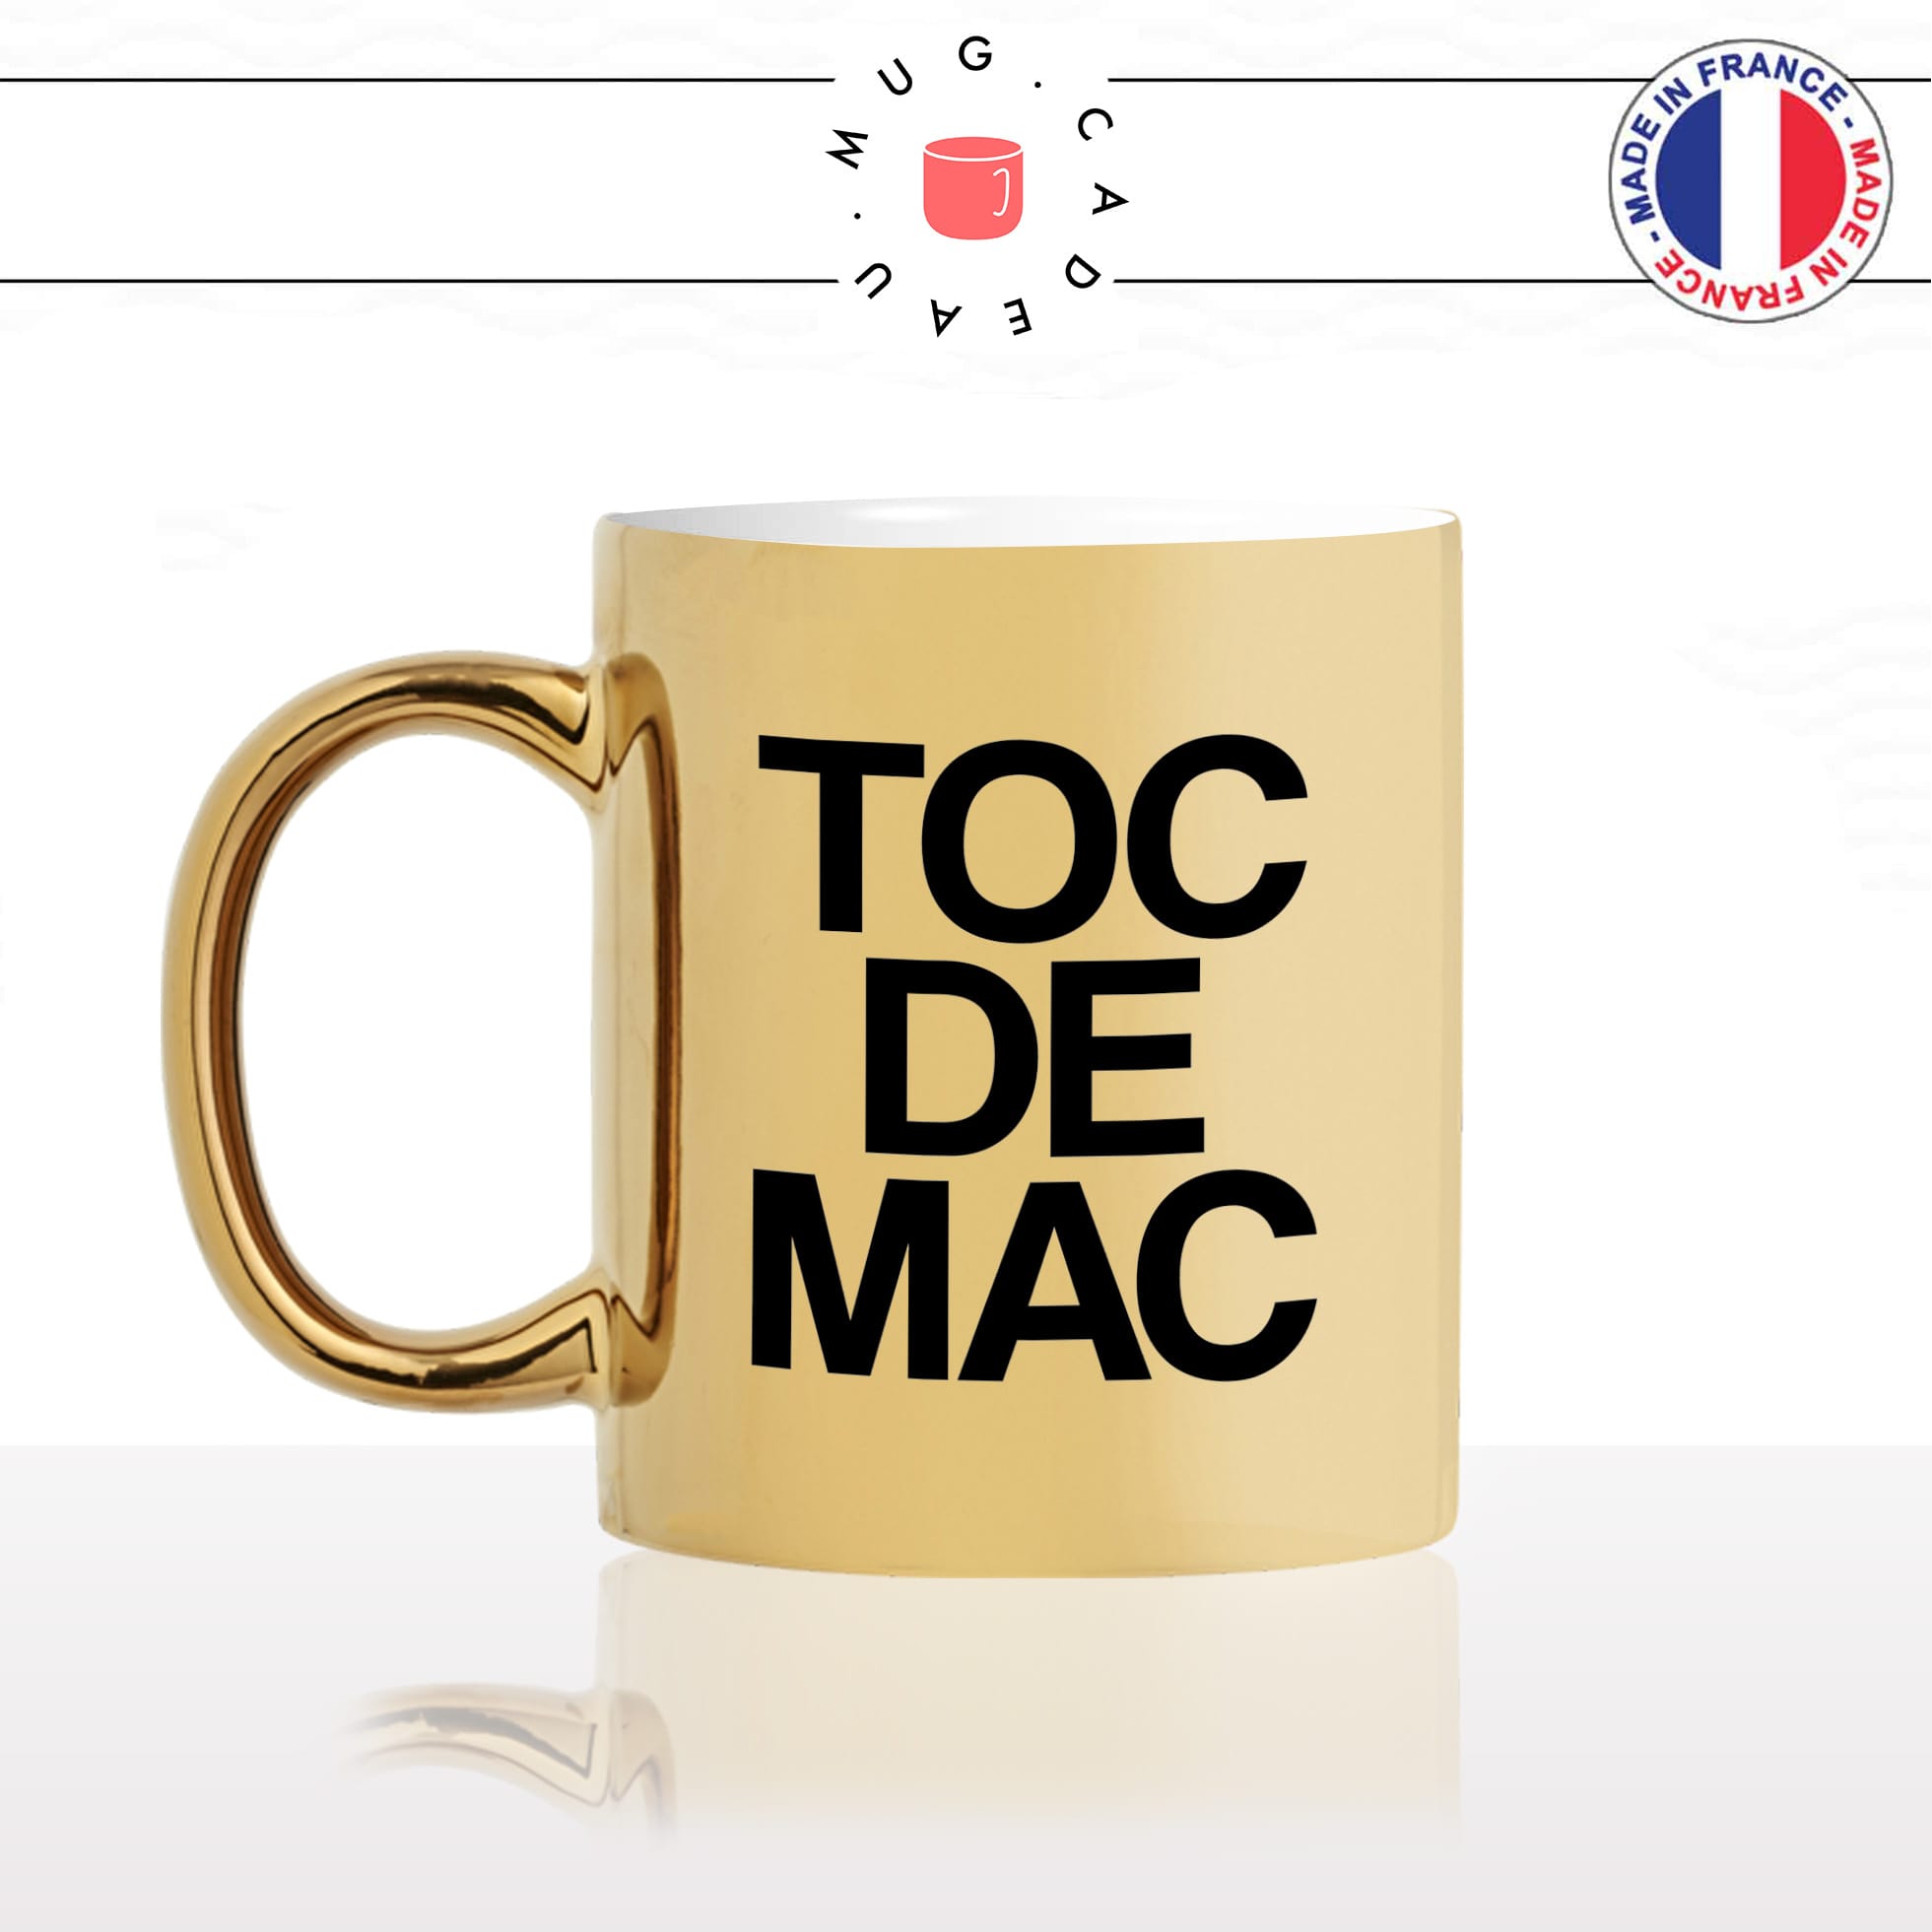 mug-tasse-or-gold-doré-toc-de-mac-toccu-di-maccu-corse-corsica-expression-langue-ile-beauté-fun-idée-cadeau-originale-personnalisé-café-thé-min